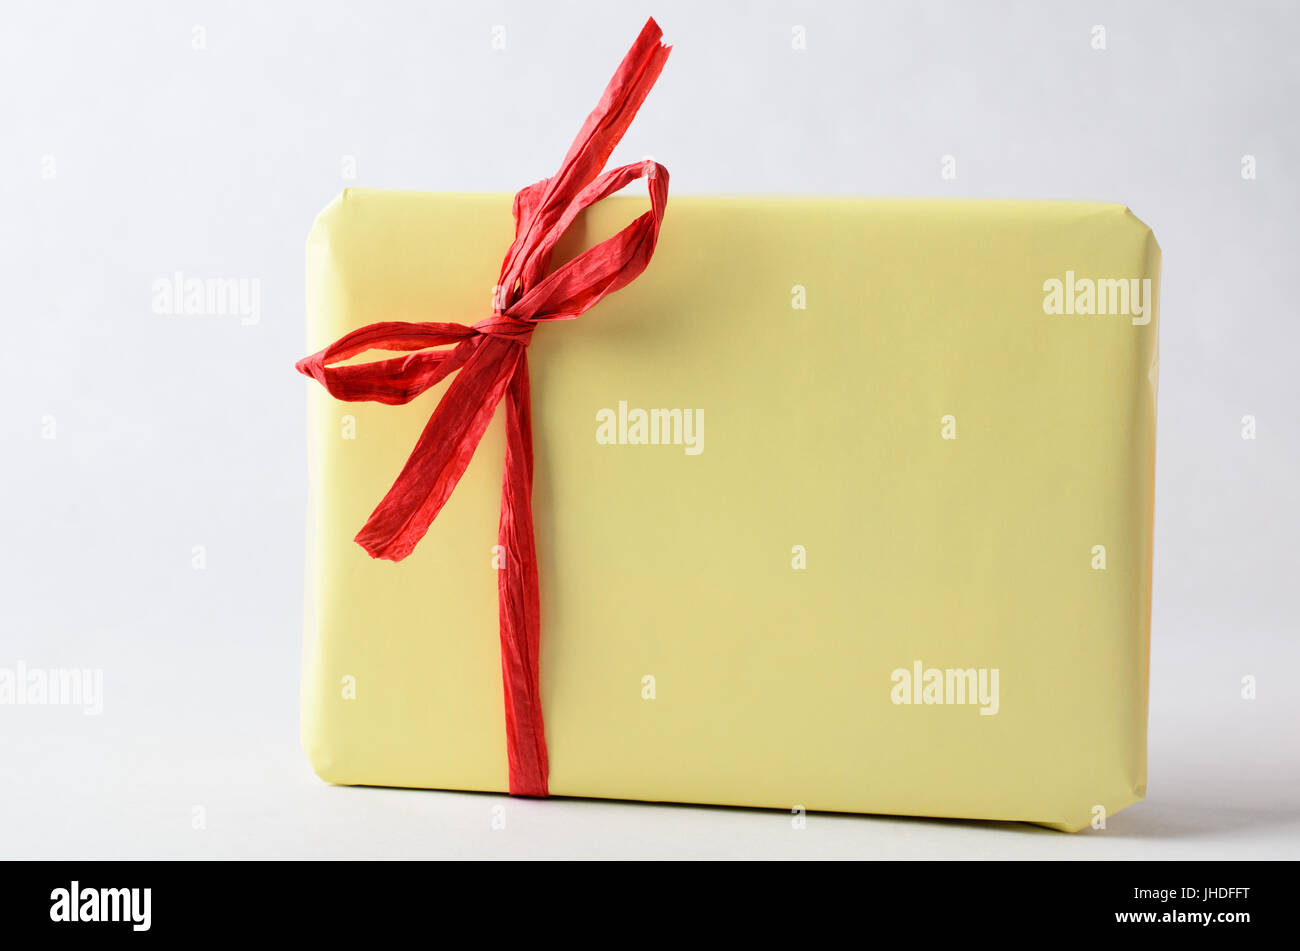 Un pacchetto regalo, molto semplicemente avvolto in formato carta gialla con rafia rossa nastro legato ad un arco. Nessuna etichetta. Copia dello spazio sul confezionamento e background. Foto Stock